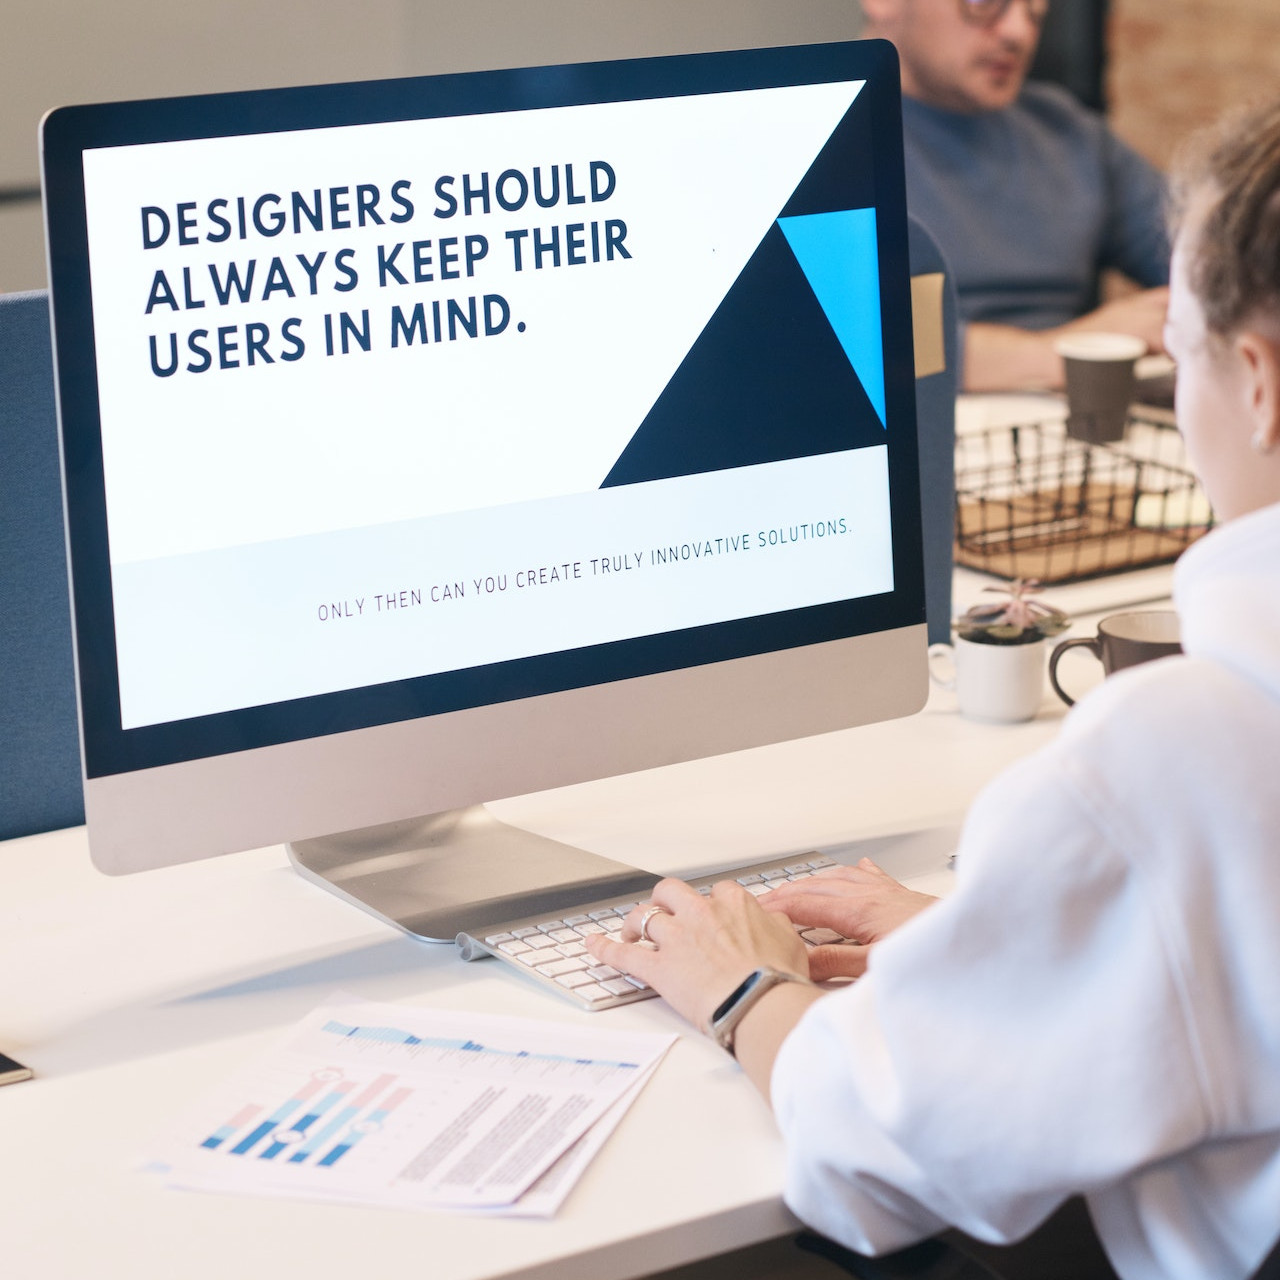 UX Designerin vor einem Monitor mit der Aufschrift "Designers schould always keep their users in mind.".